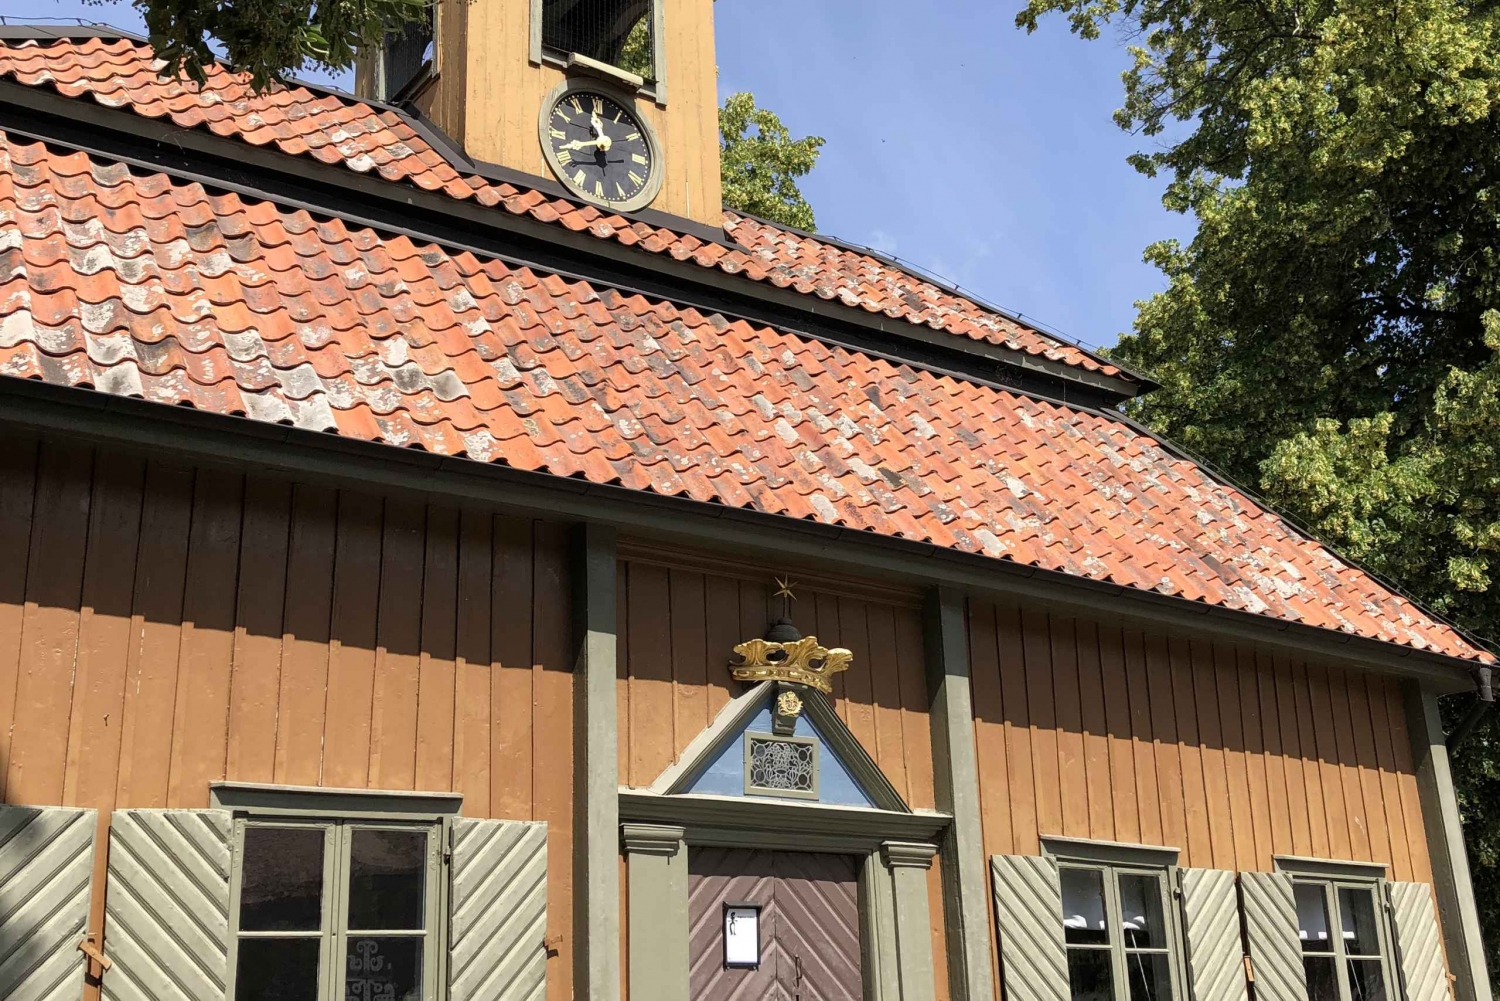 Stockholm: Sigtuna Village Oldest Town in Sweden Guided Tour